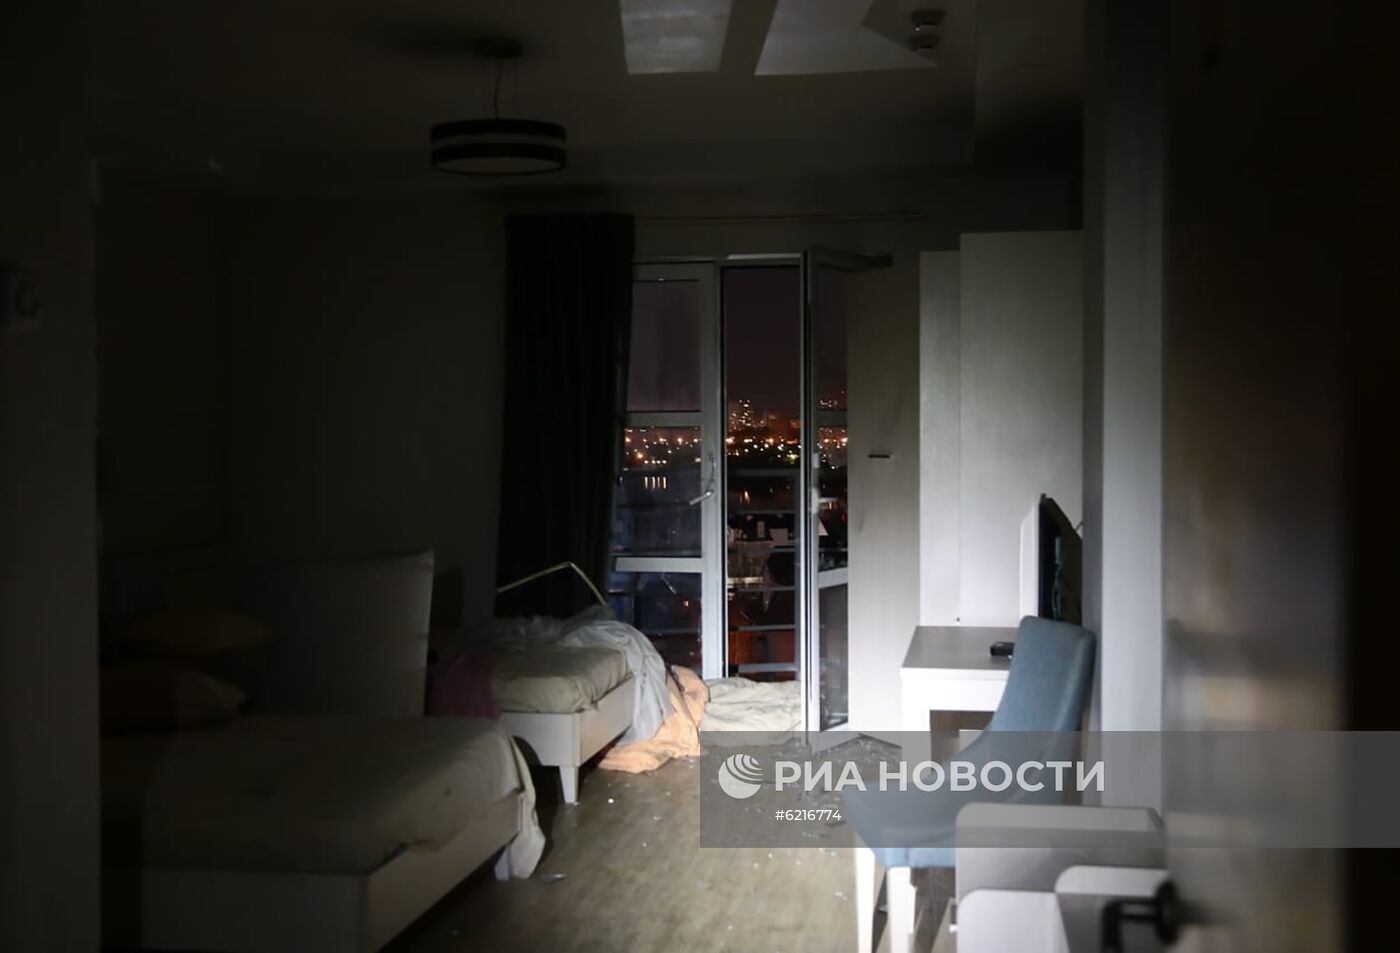 Пожар произошел в доме престарелых в Москве